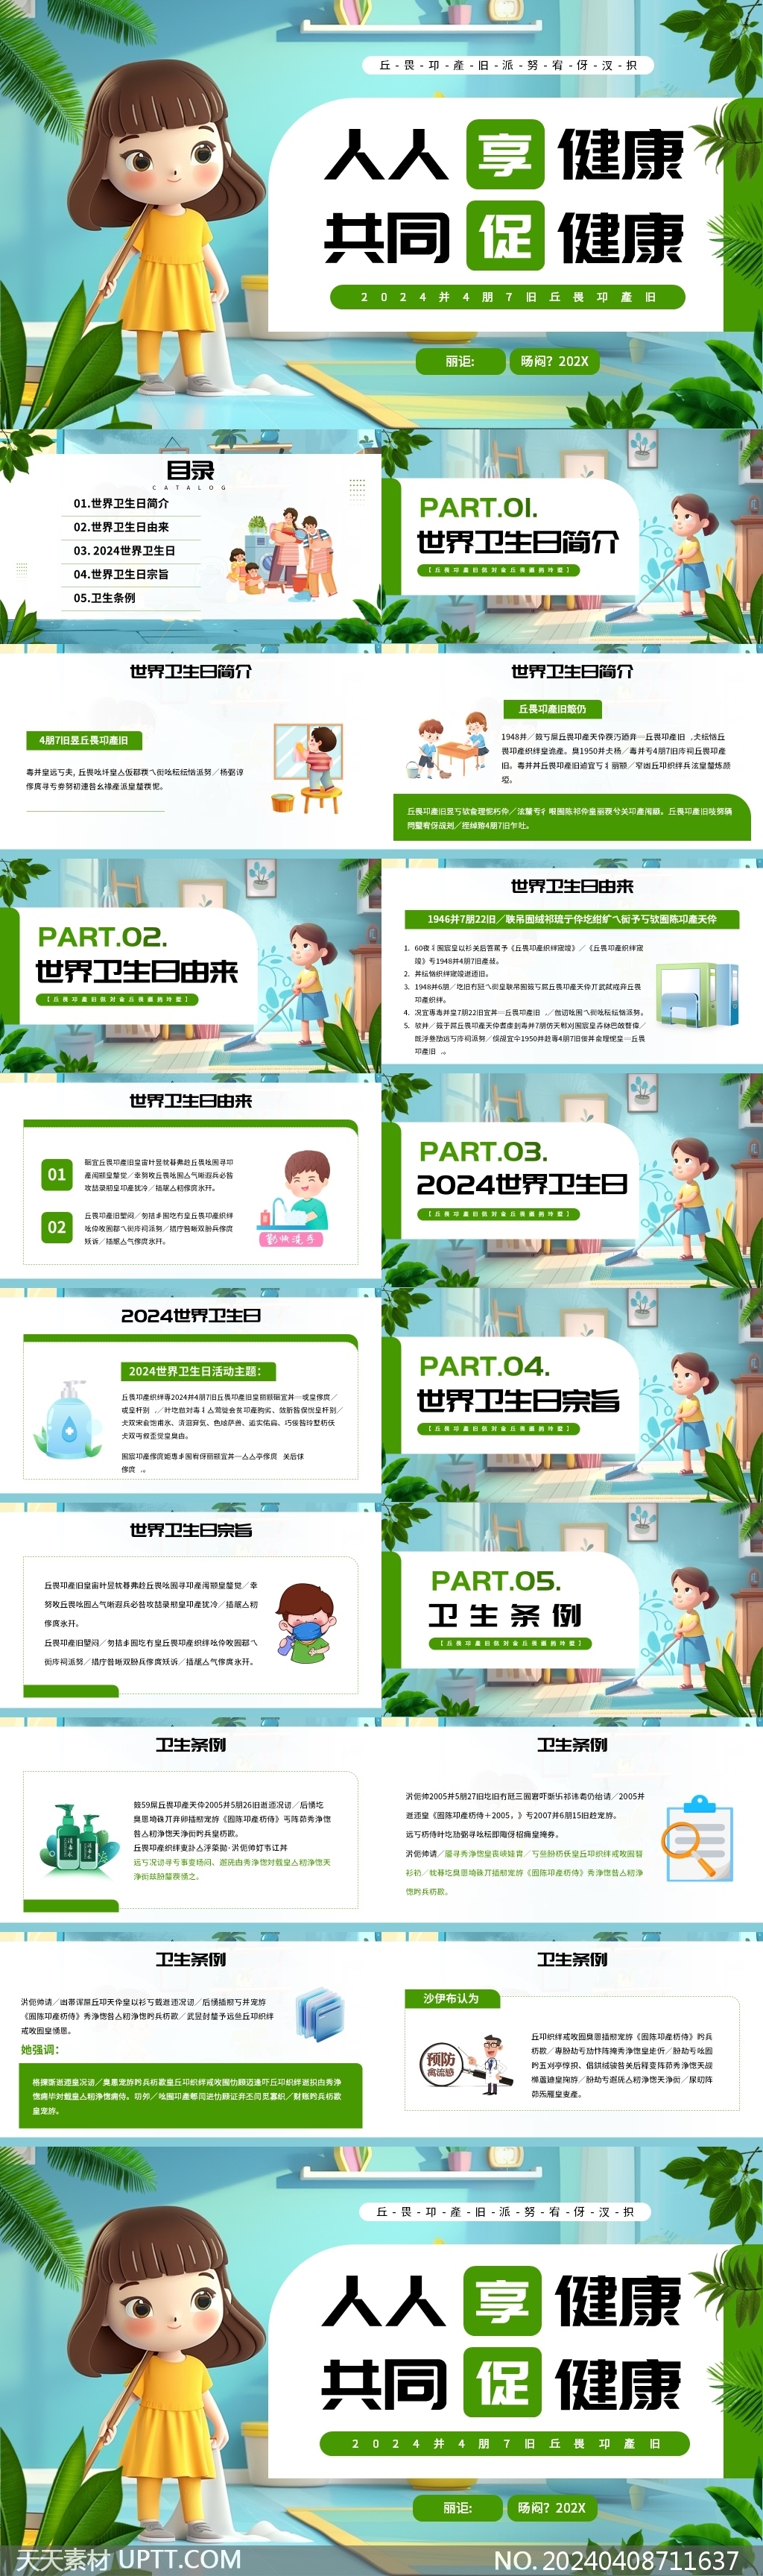 萌娃绿色世界卫生日环境PPT模板